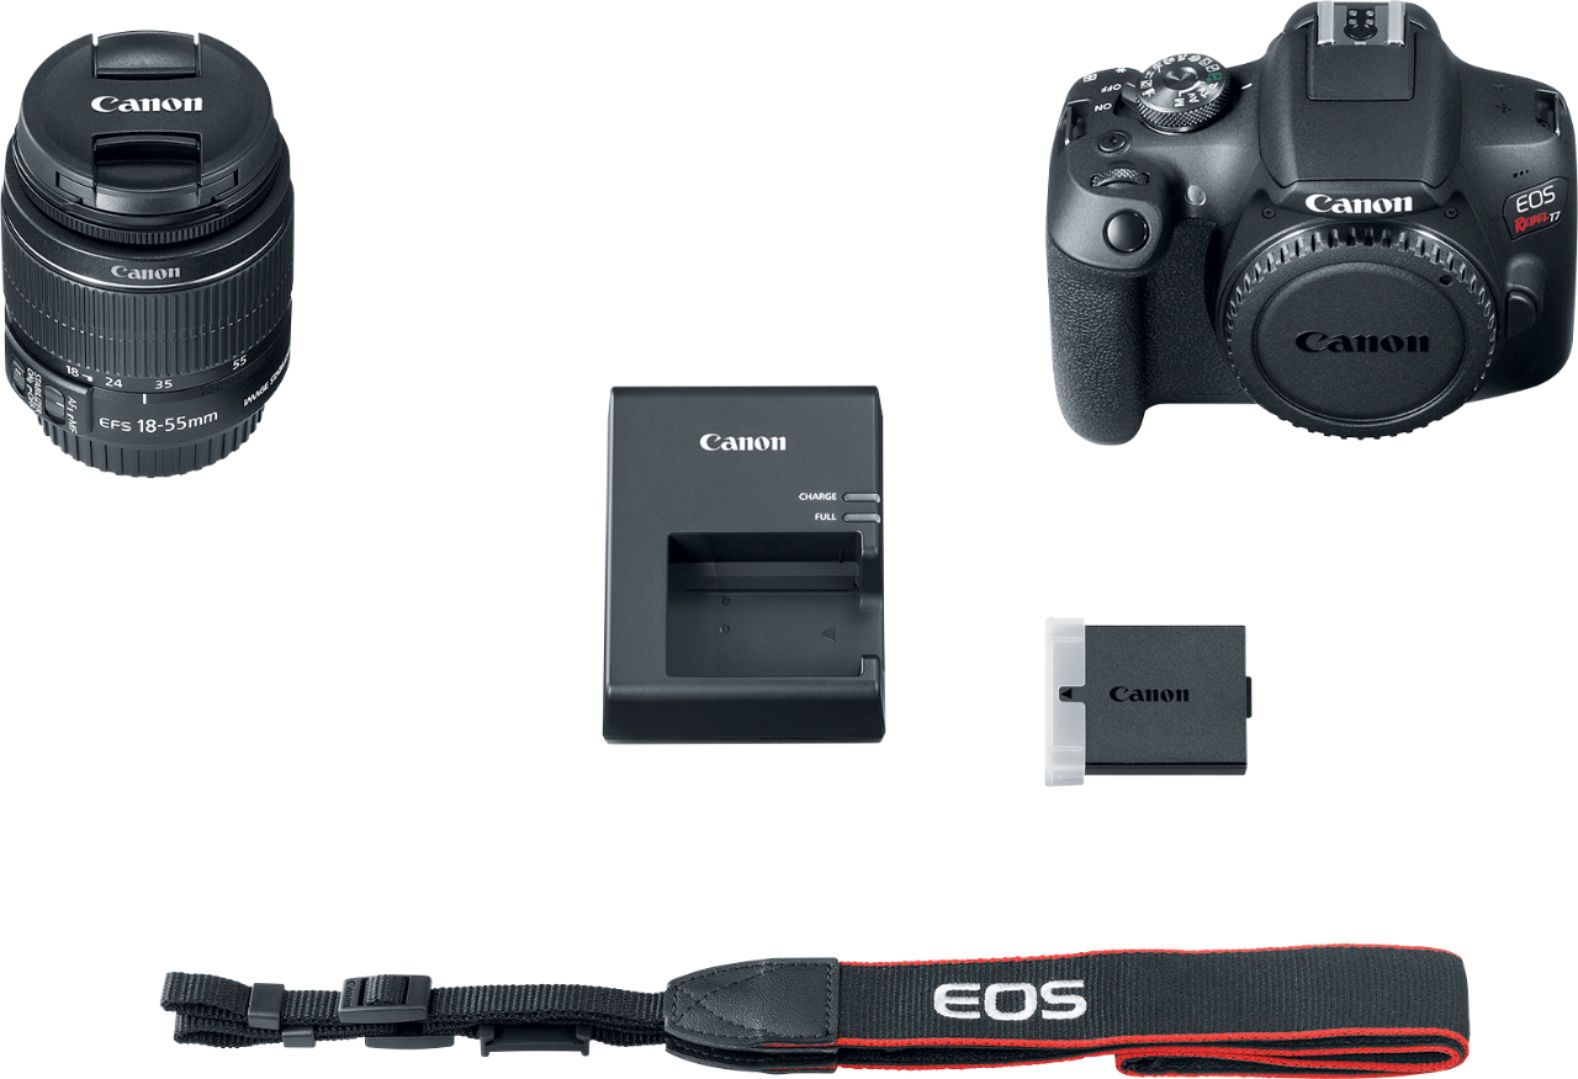 Dapper Katholiek Voorwaarde Canon EOS Rebel T7 DSLR Video Camera with 18-55mm Lens Black 2727C002 -  Best Buy